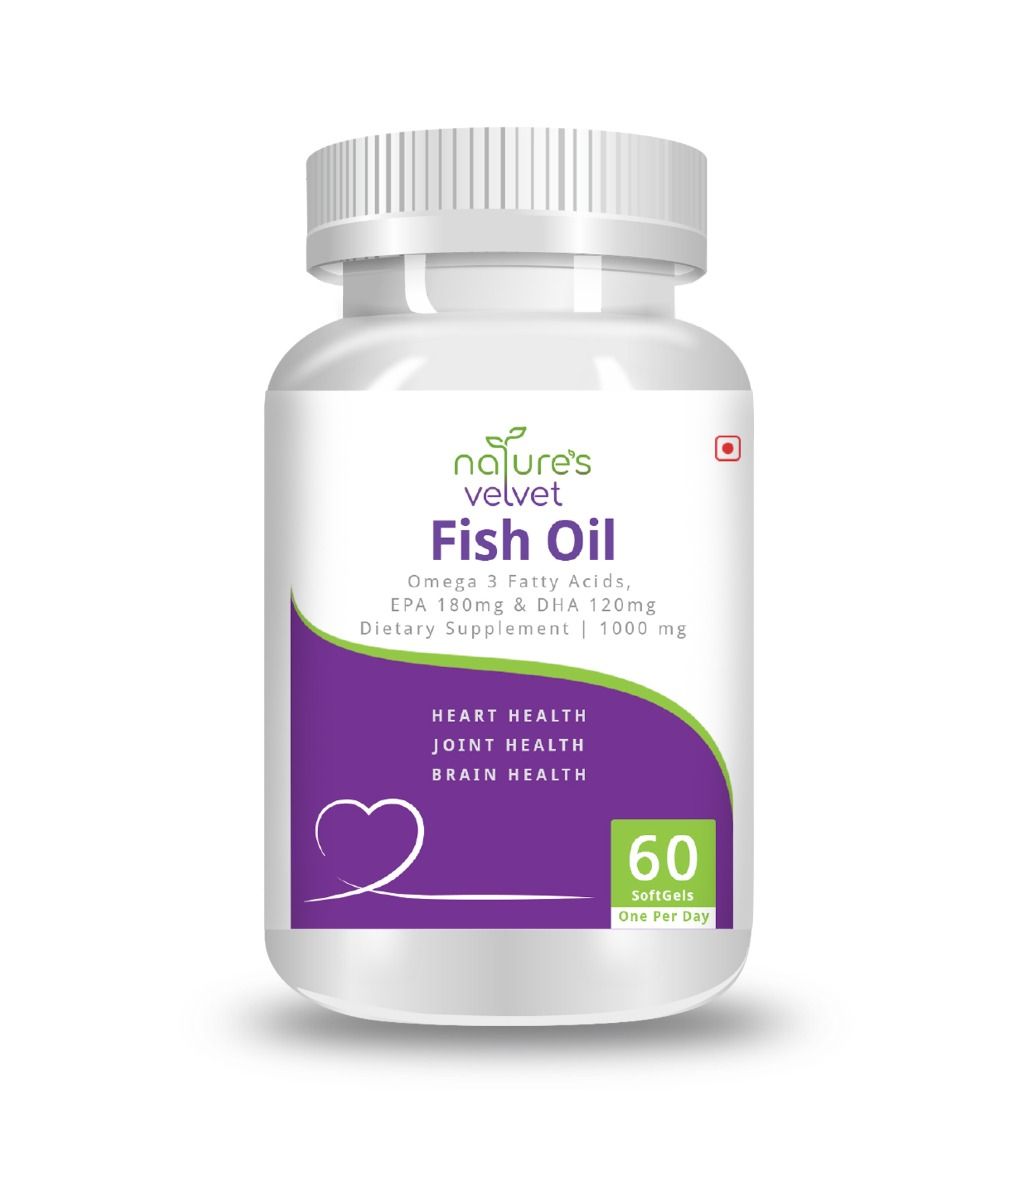 Nature's Velvet Fish Oil Omega 3 1000 mg, 60 Softgels , Pack of 1 